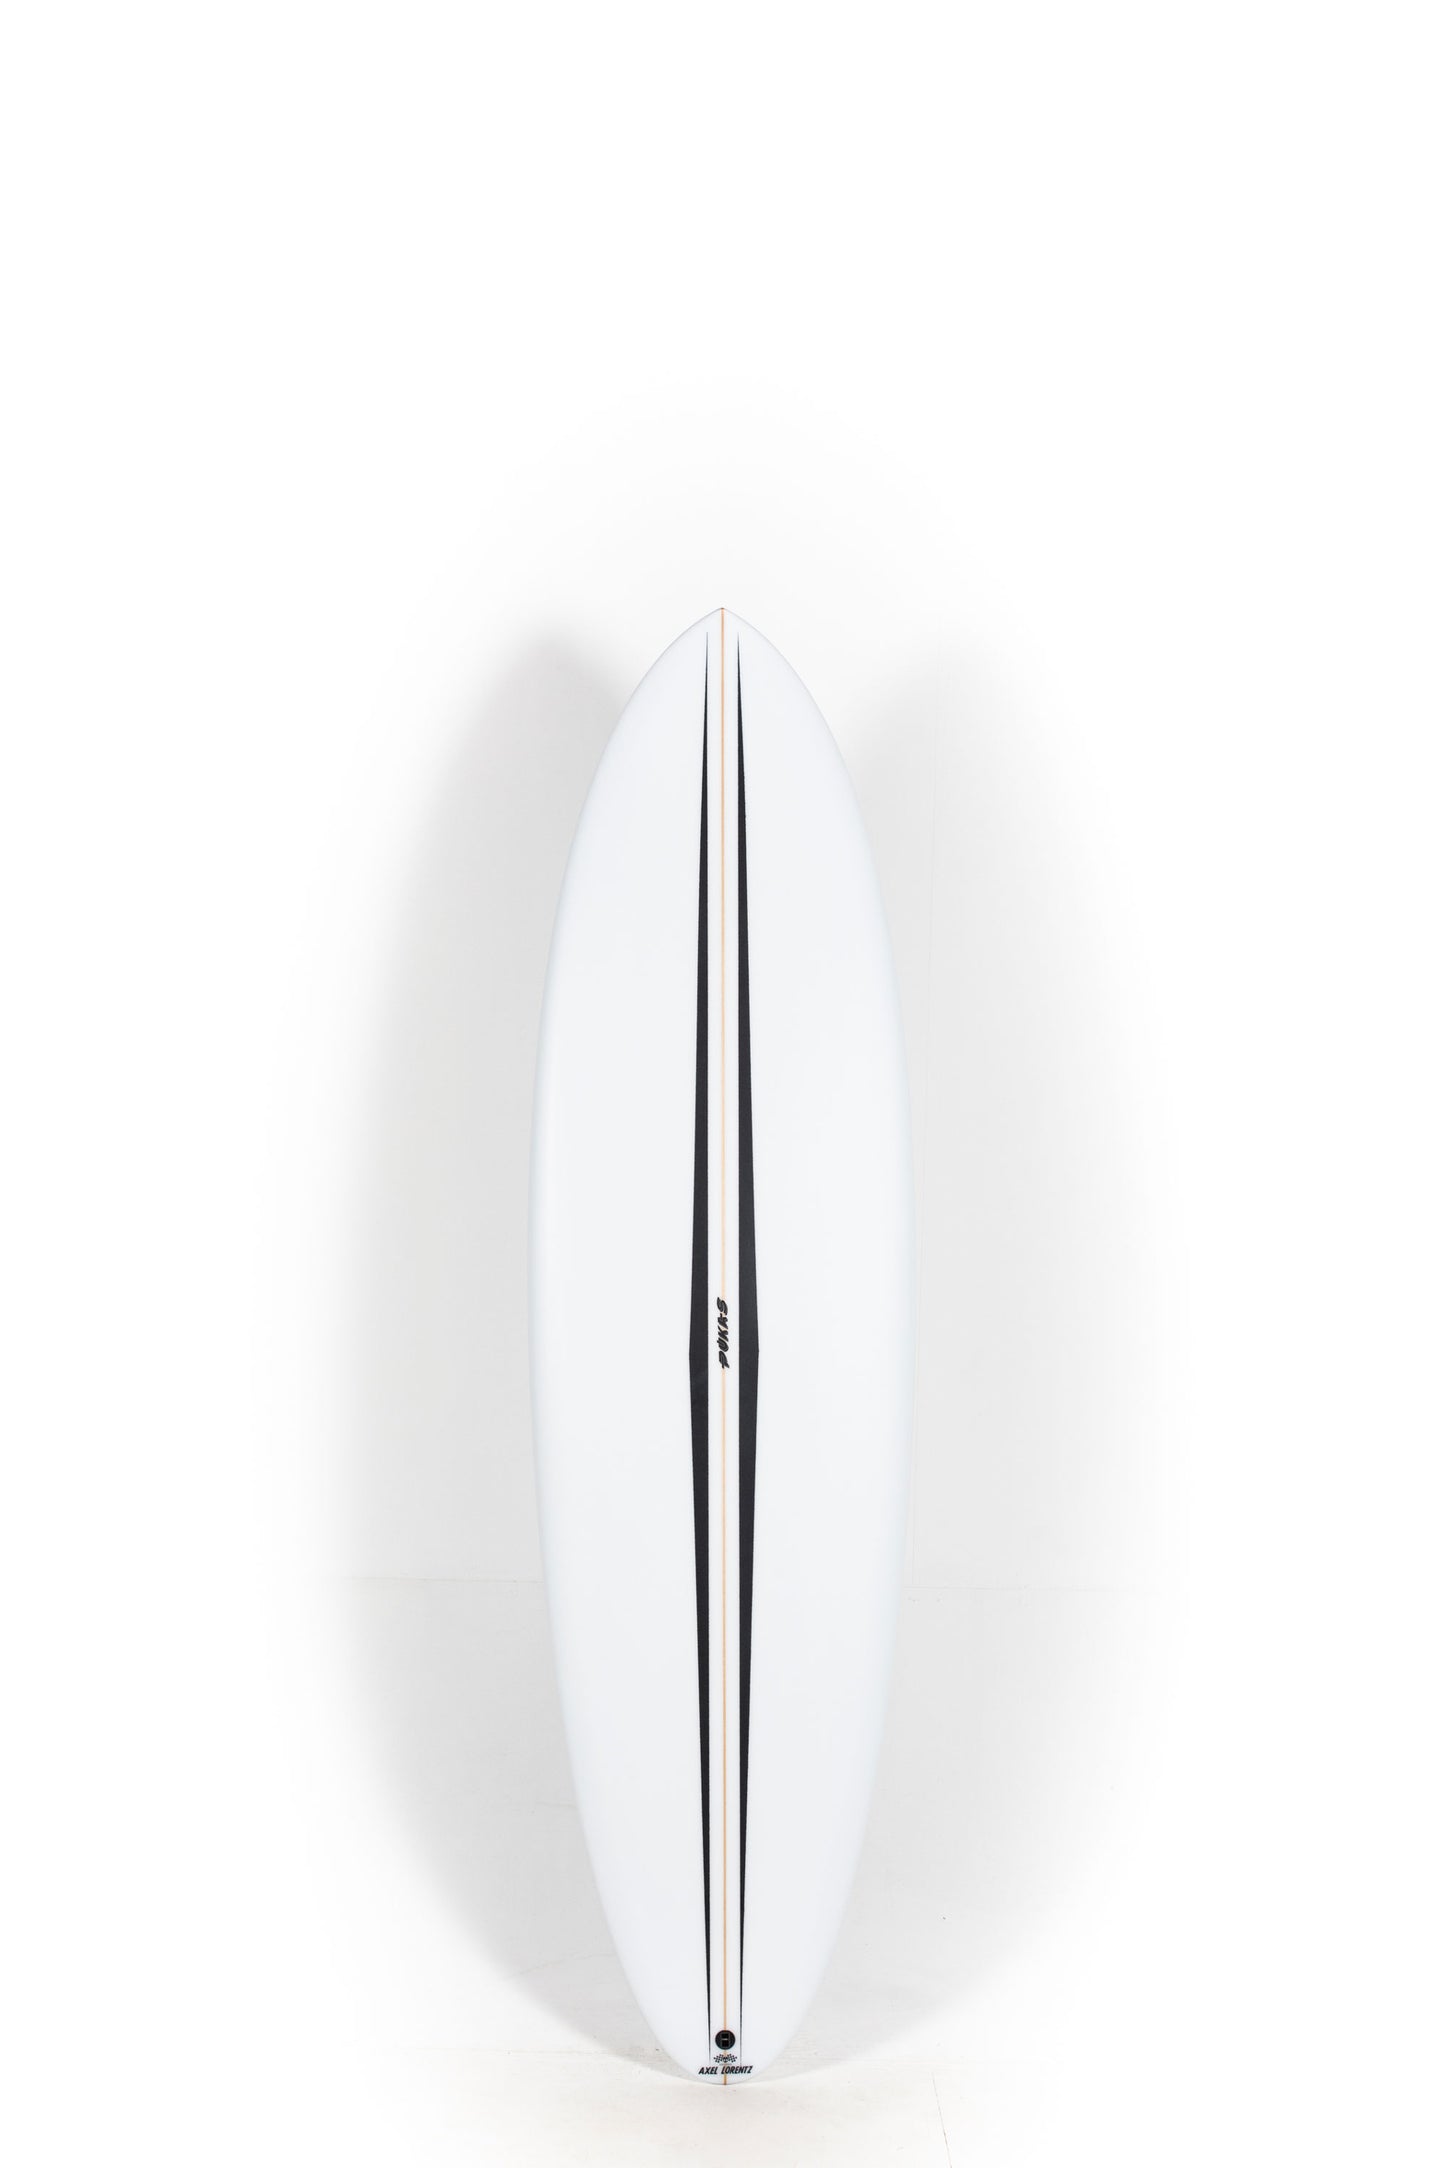 Pukas Surf Shop - Pukas Surfboard - LA CÔTE by Axel Lorentz - 6'7" x 21,18 x 2,84 - 42,04L -  AX09629